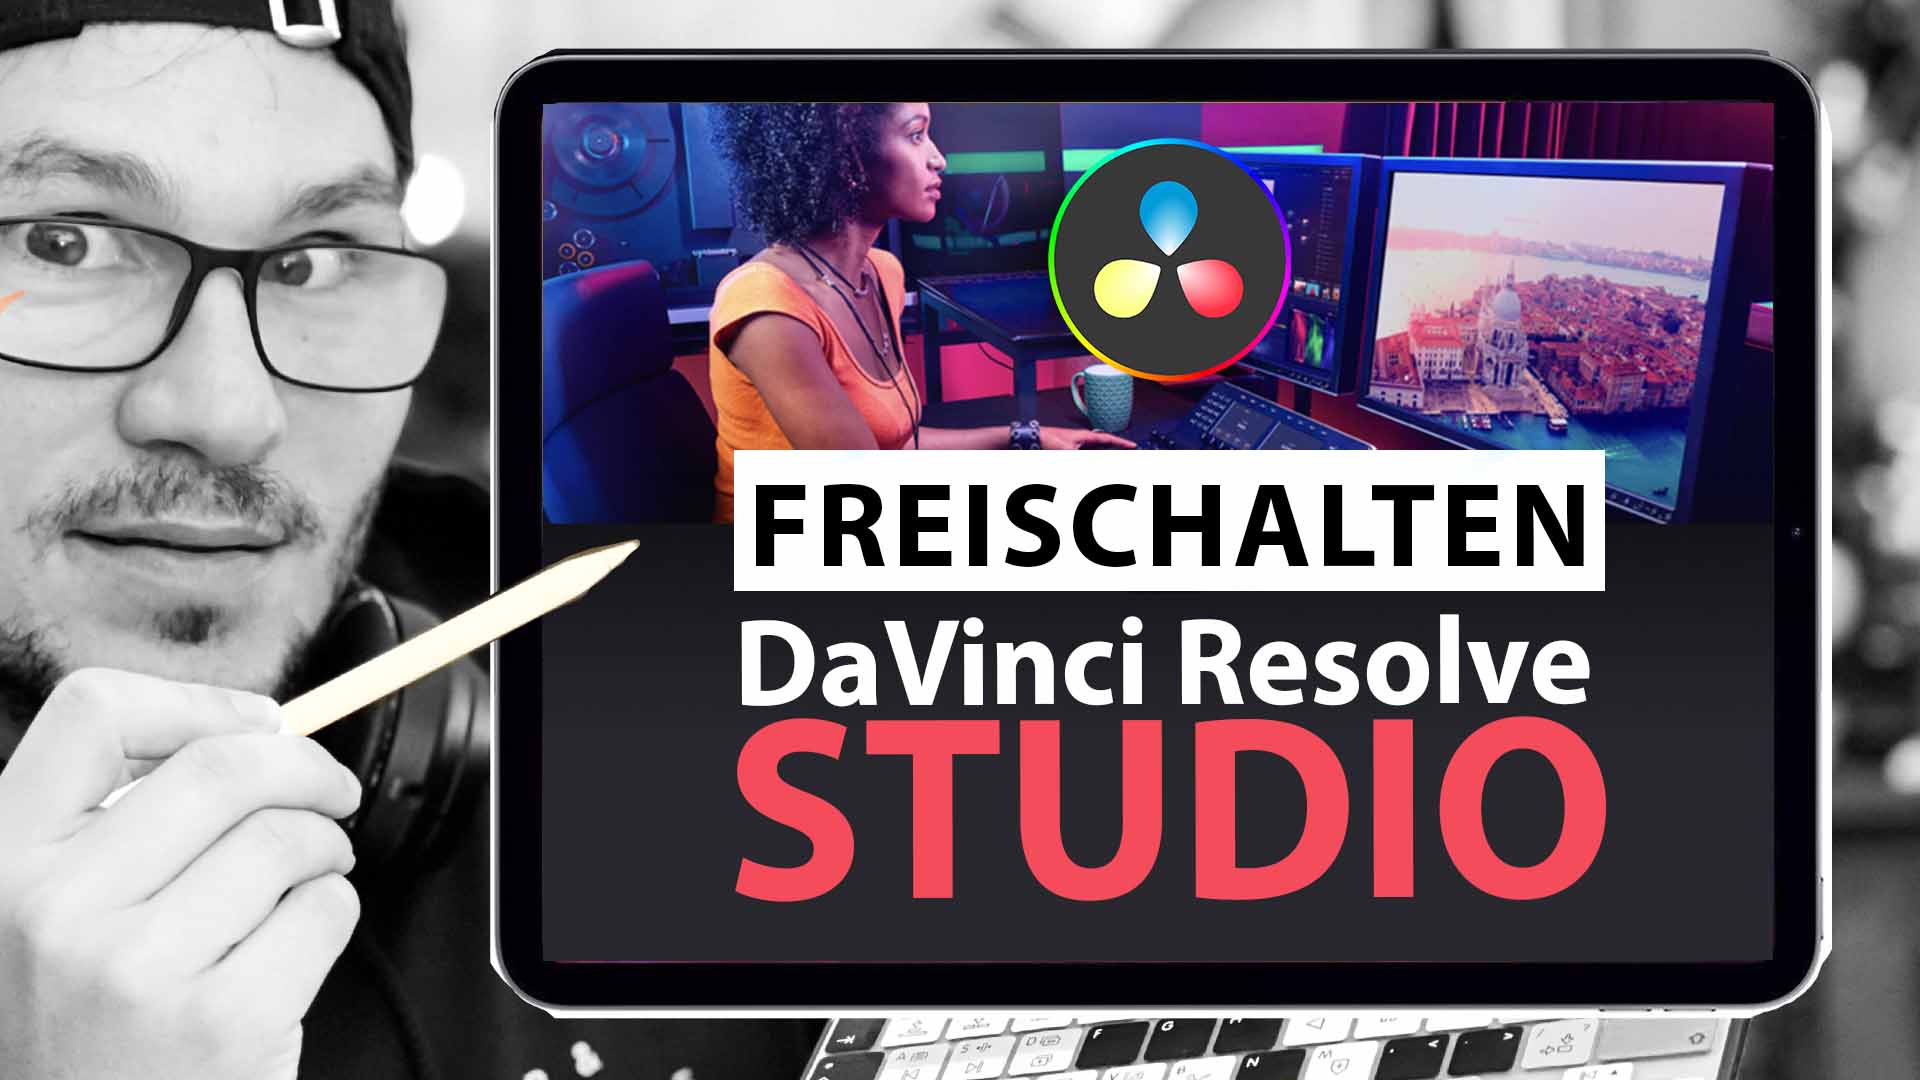 DaVinci Resolve Studio fürs iPad freischalten (So geht’s) + 4K Videos Rendern